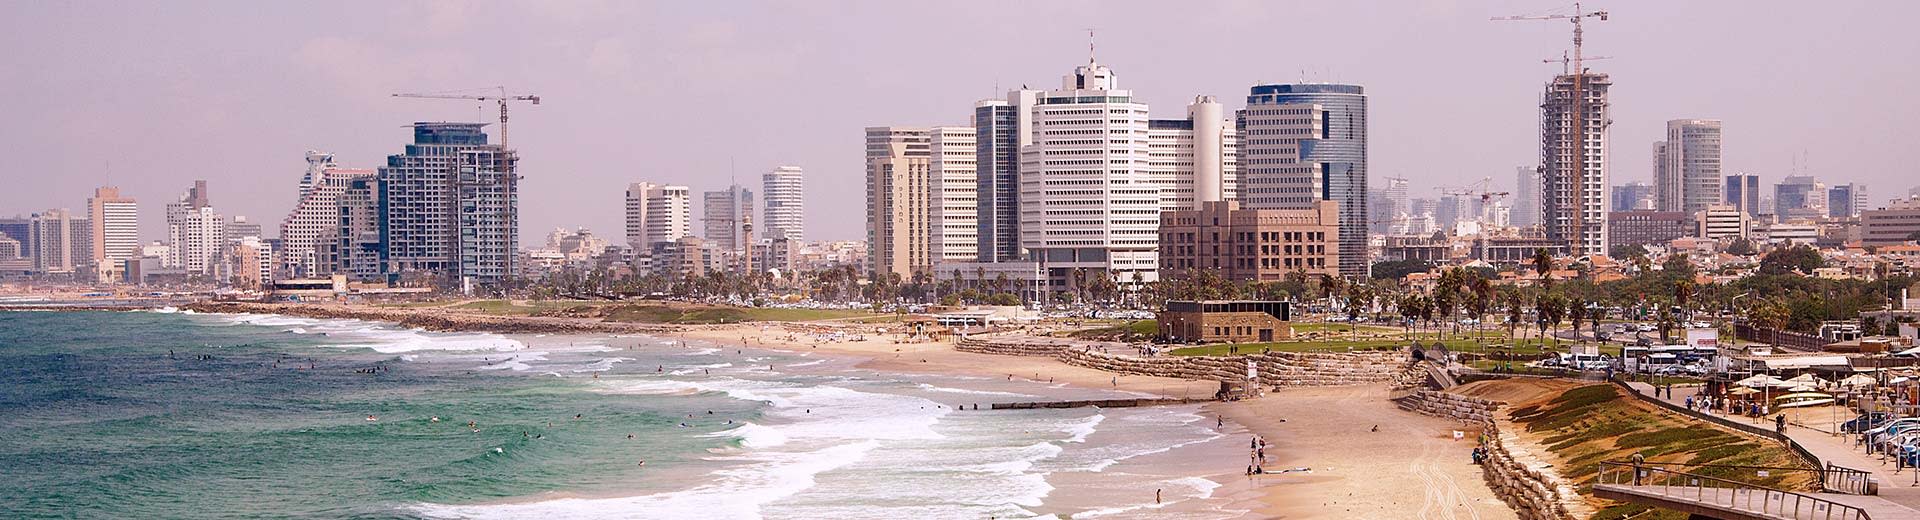 Sous un ciel nuageux de Tel Aviv se trouvent des gratte-ciel et des hôtels génériques, tandis qu'une plage presque vide est au premier plan.